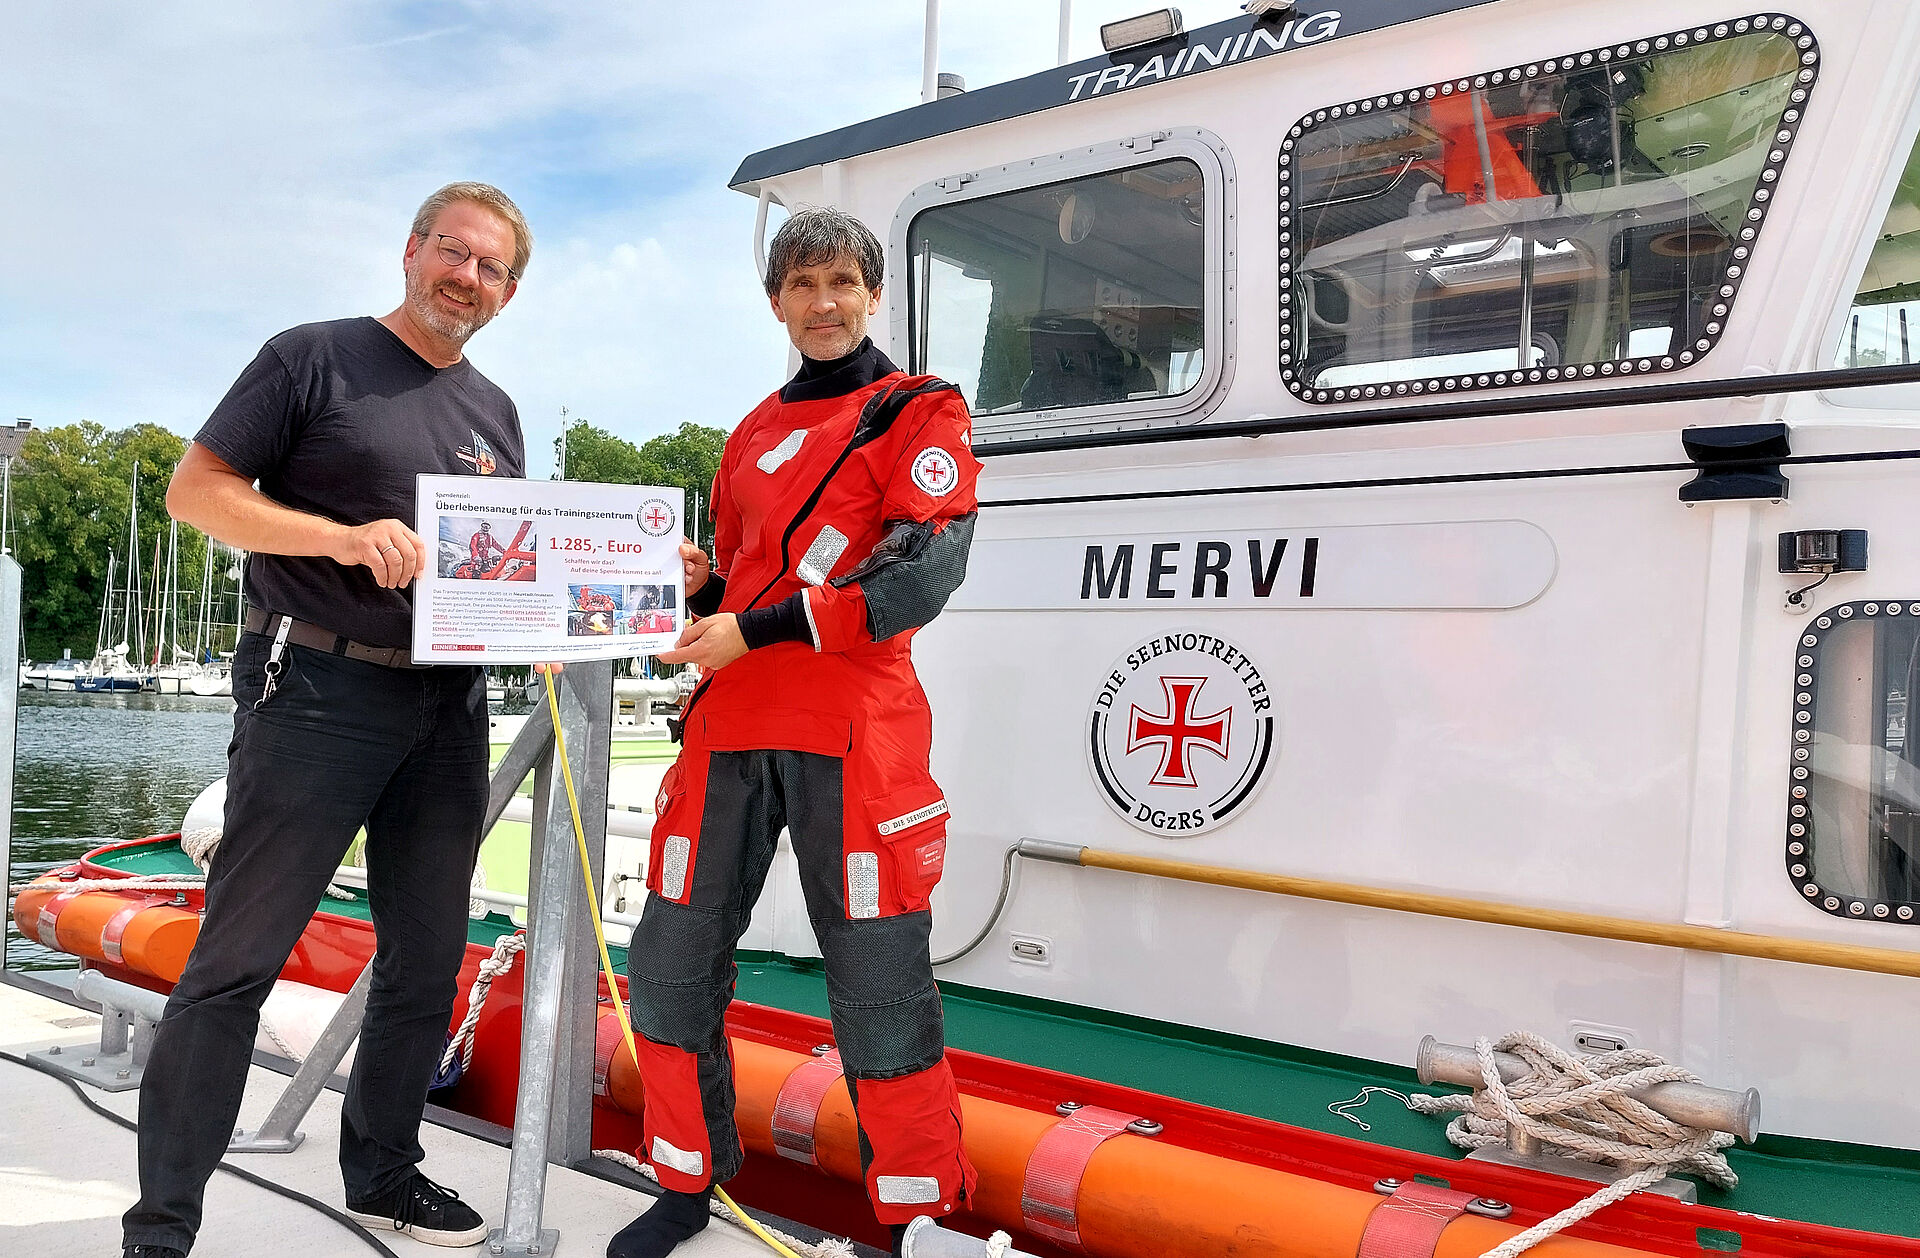 Vor dem Trainingsboot MERVI stehen der Liedermacher (l.) aus Kehl am Rhein und der Leiter des DGzRS-Trainingszentrums, im roten DGzRS-Kälteschutzanzug, mit einem symbolischen Spendenscheck in den Händen.